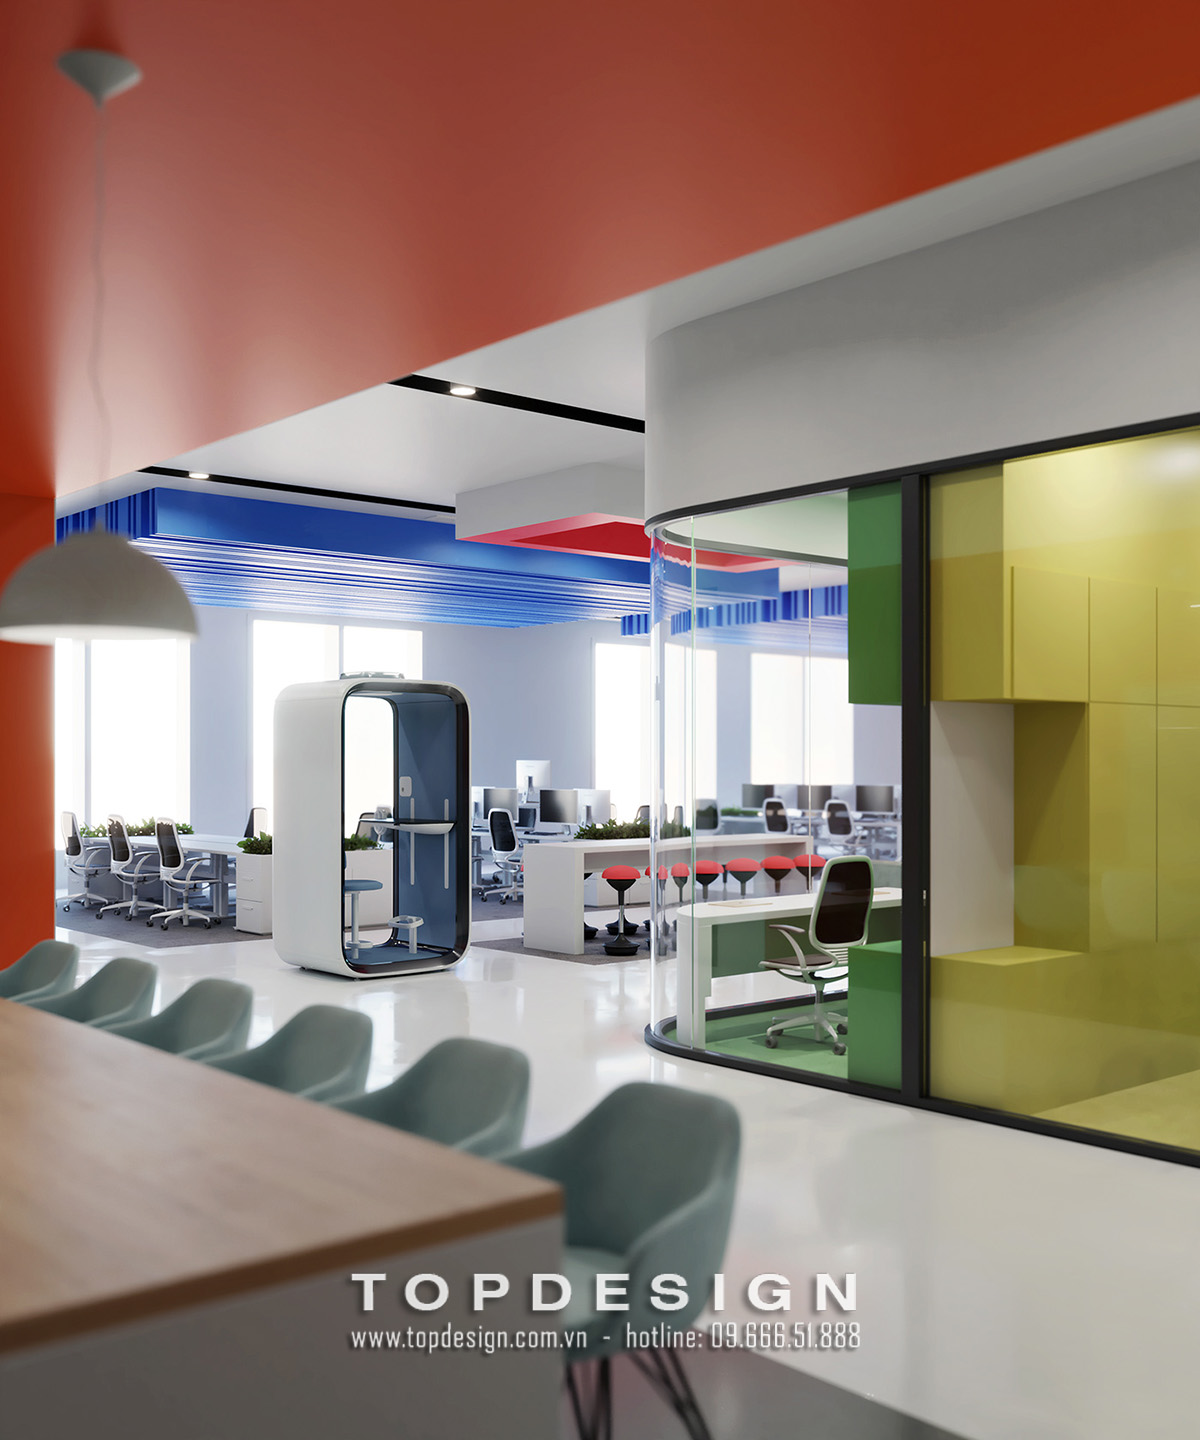 2.Mẫu thiết kế nội thất văn phòng IT 800m2 bắt mắt thu hút _TOPDESIGN